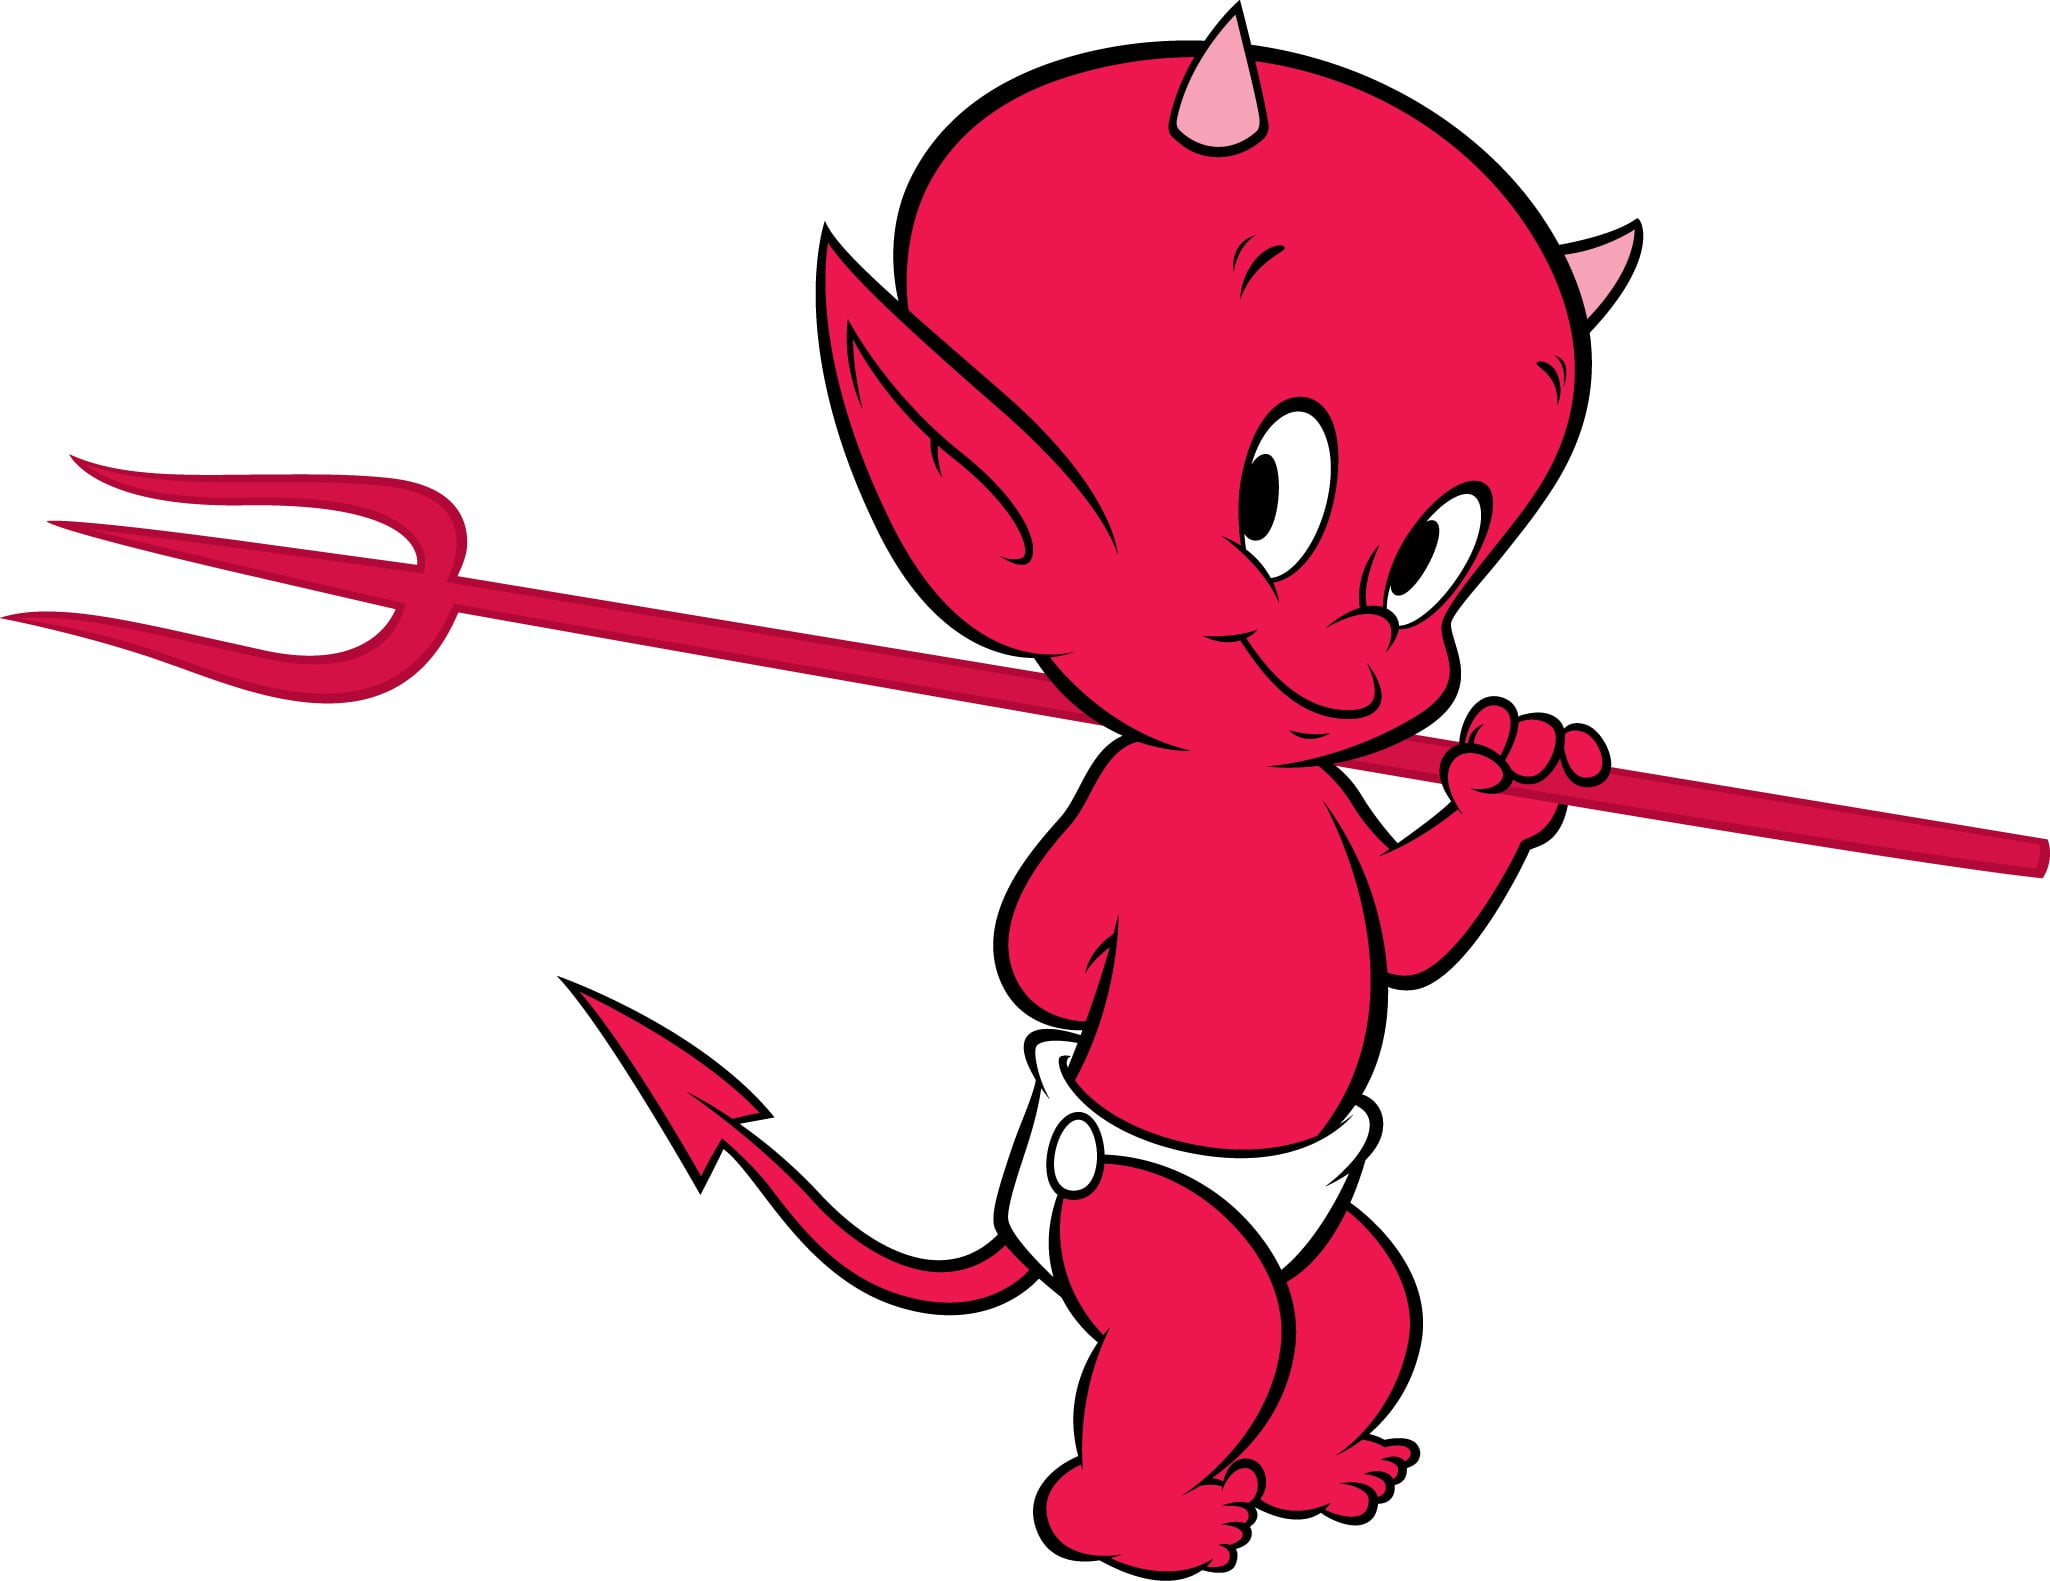 https://www.wallpaperflare.com/static/154/920/63/red-devil-toddler-devil-illustration-wallpaper.jpg